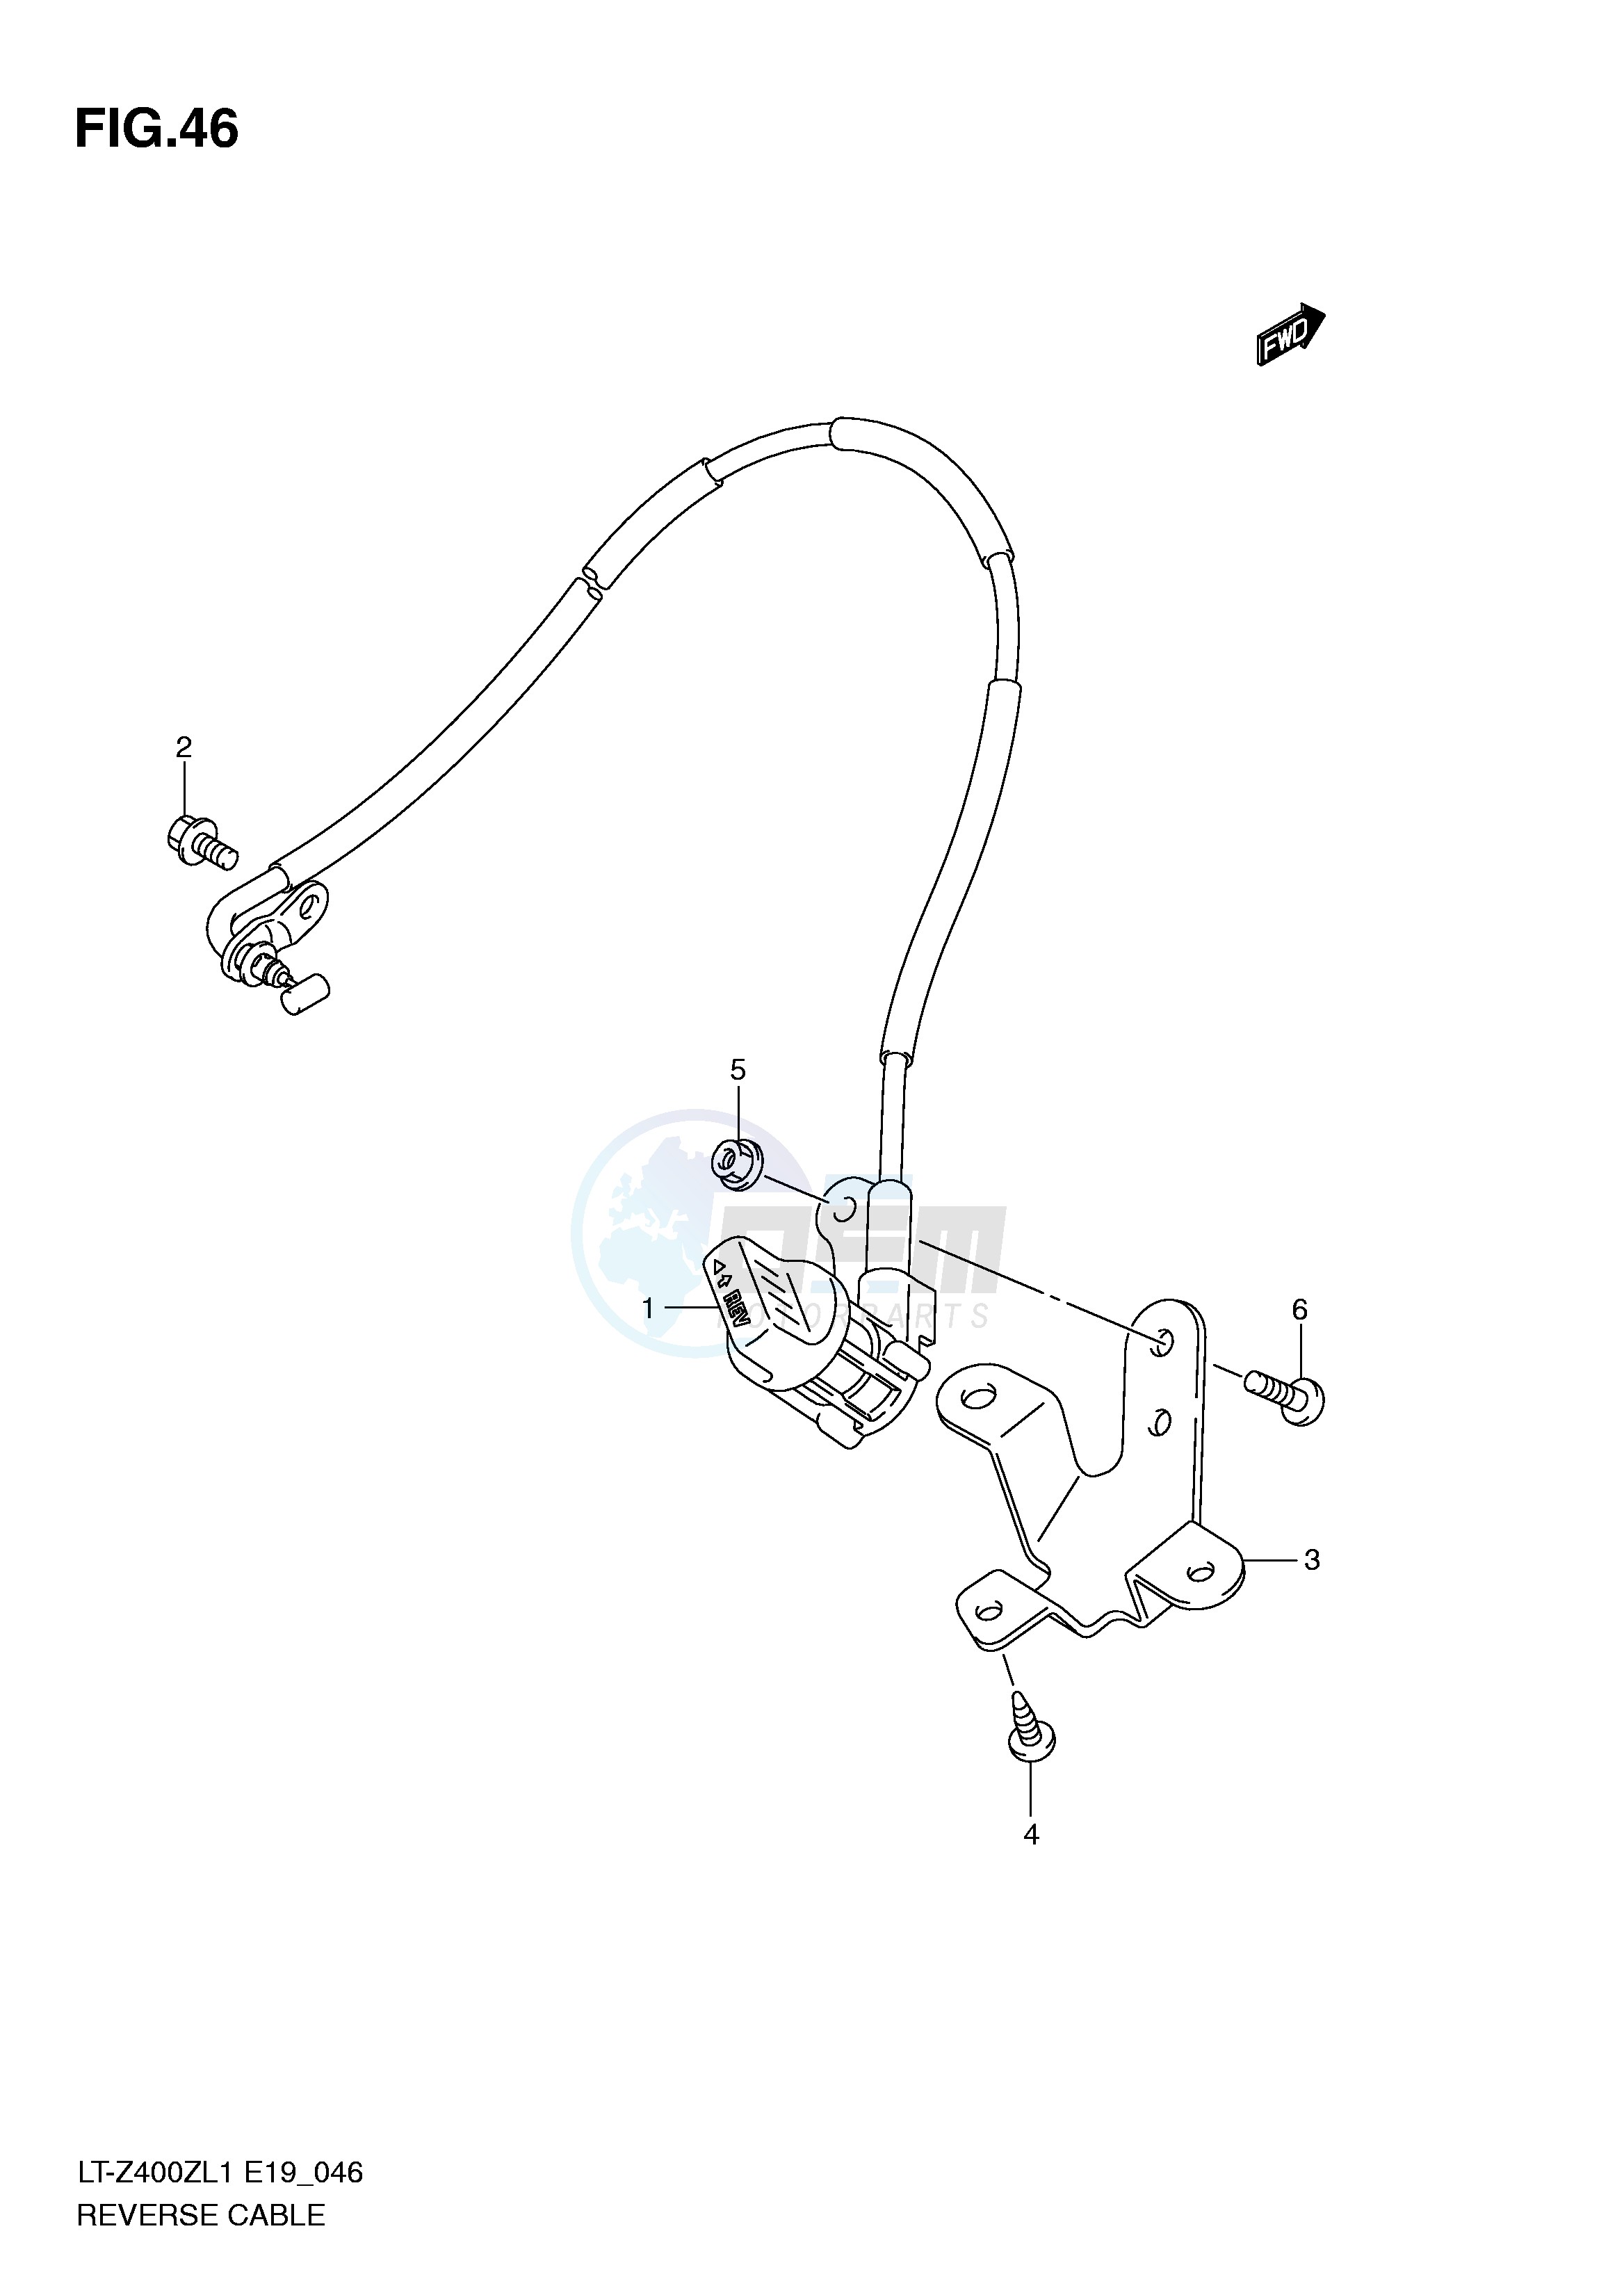 REVERSE CABLE (LT-Z400L1 E19) blueprint